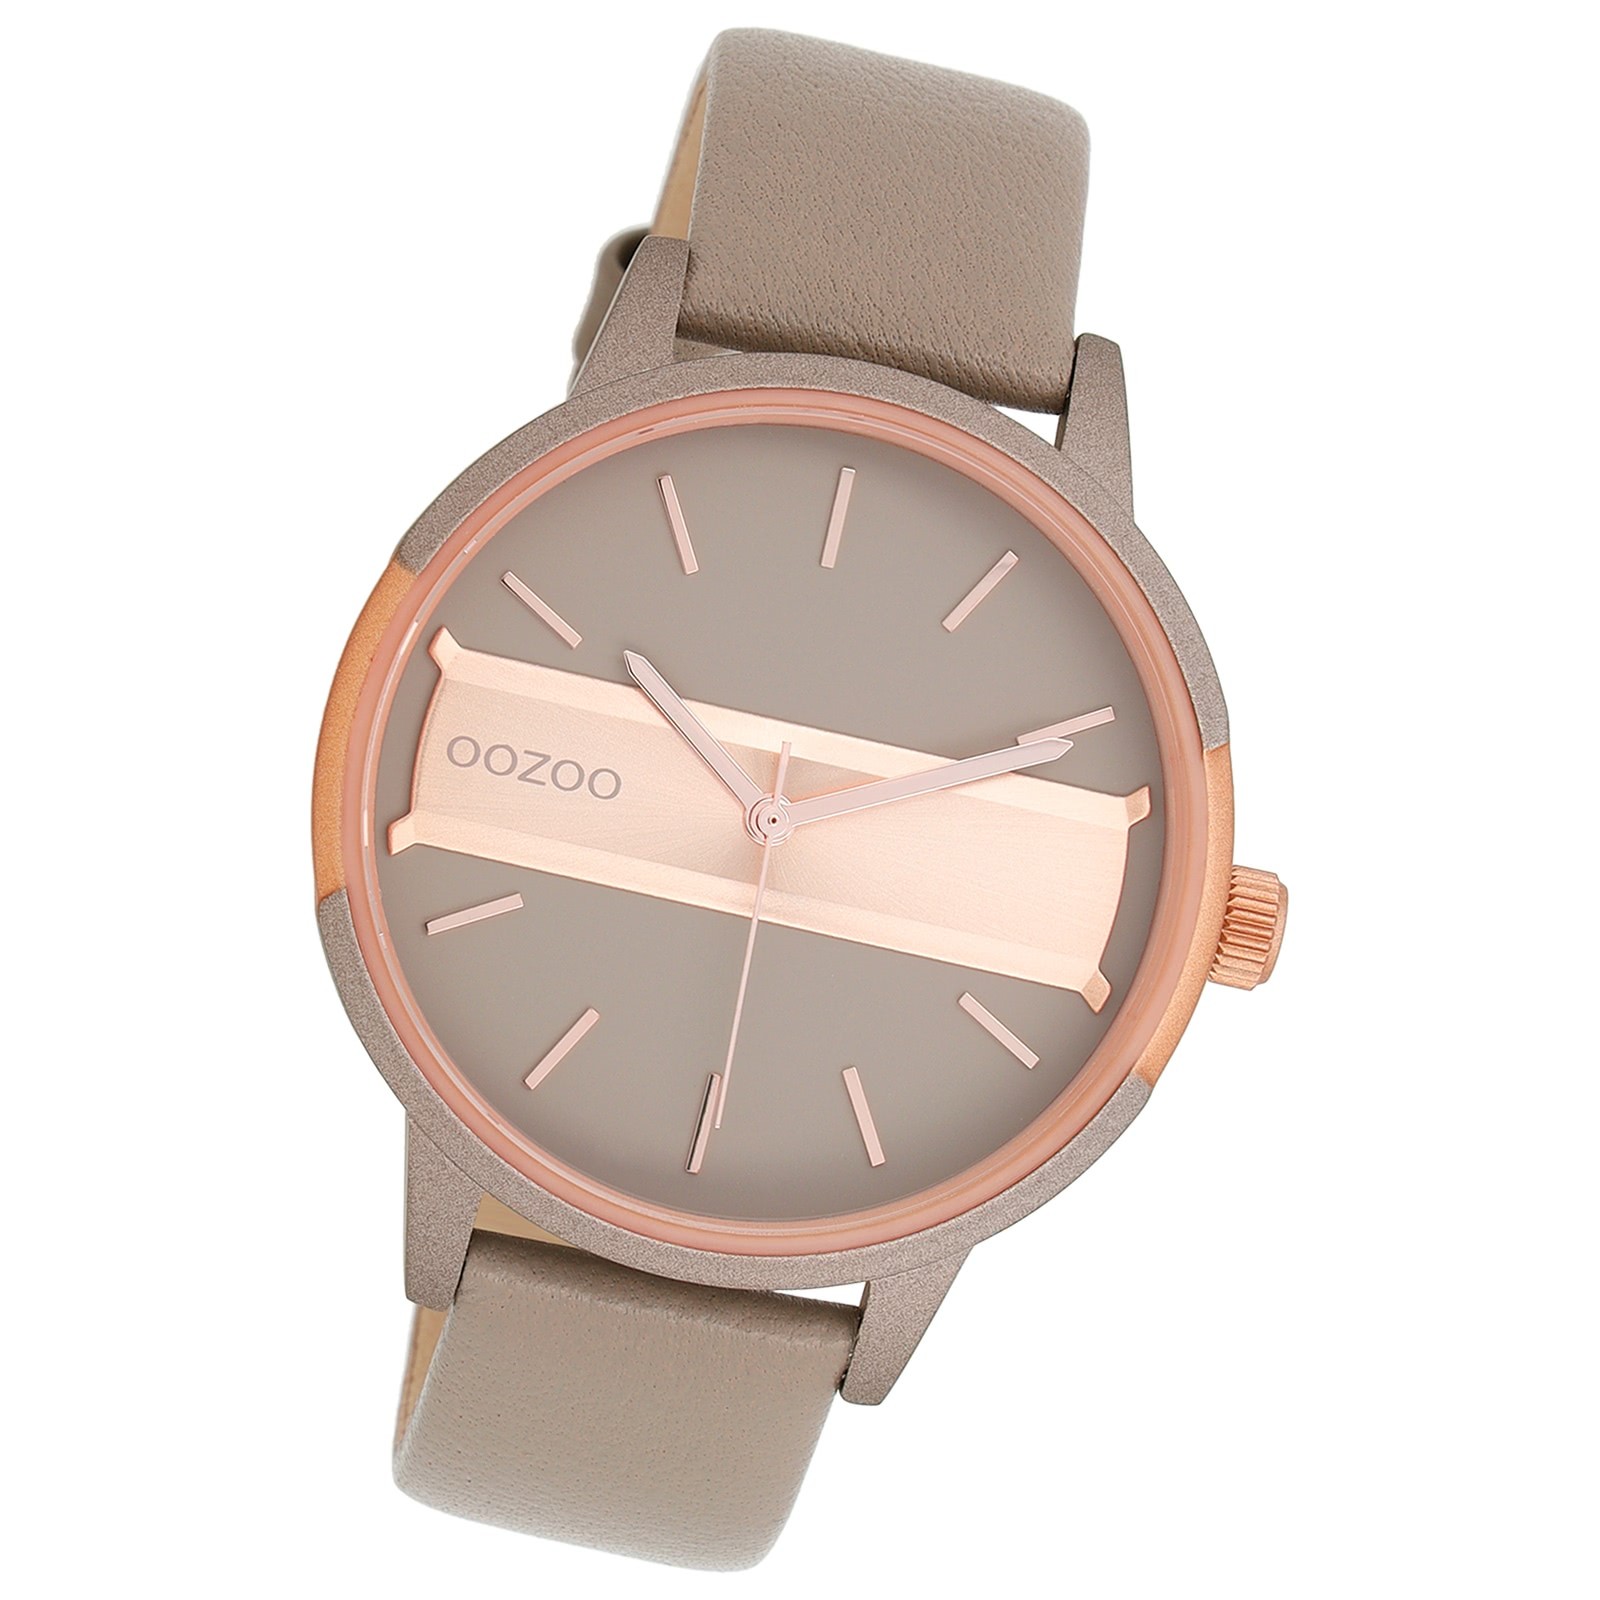 Oozoo Damen Armbanduhr Timepieces Analog Leder taupe braun UOC11153